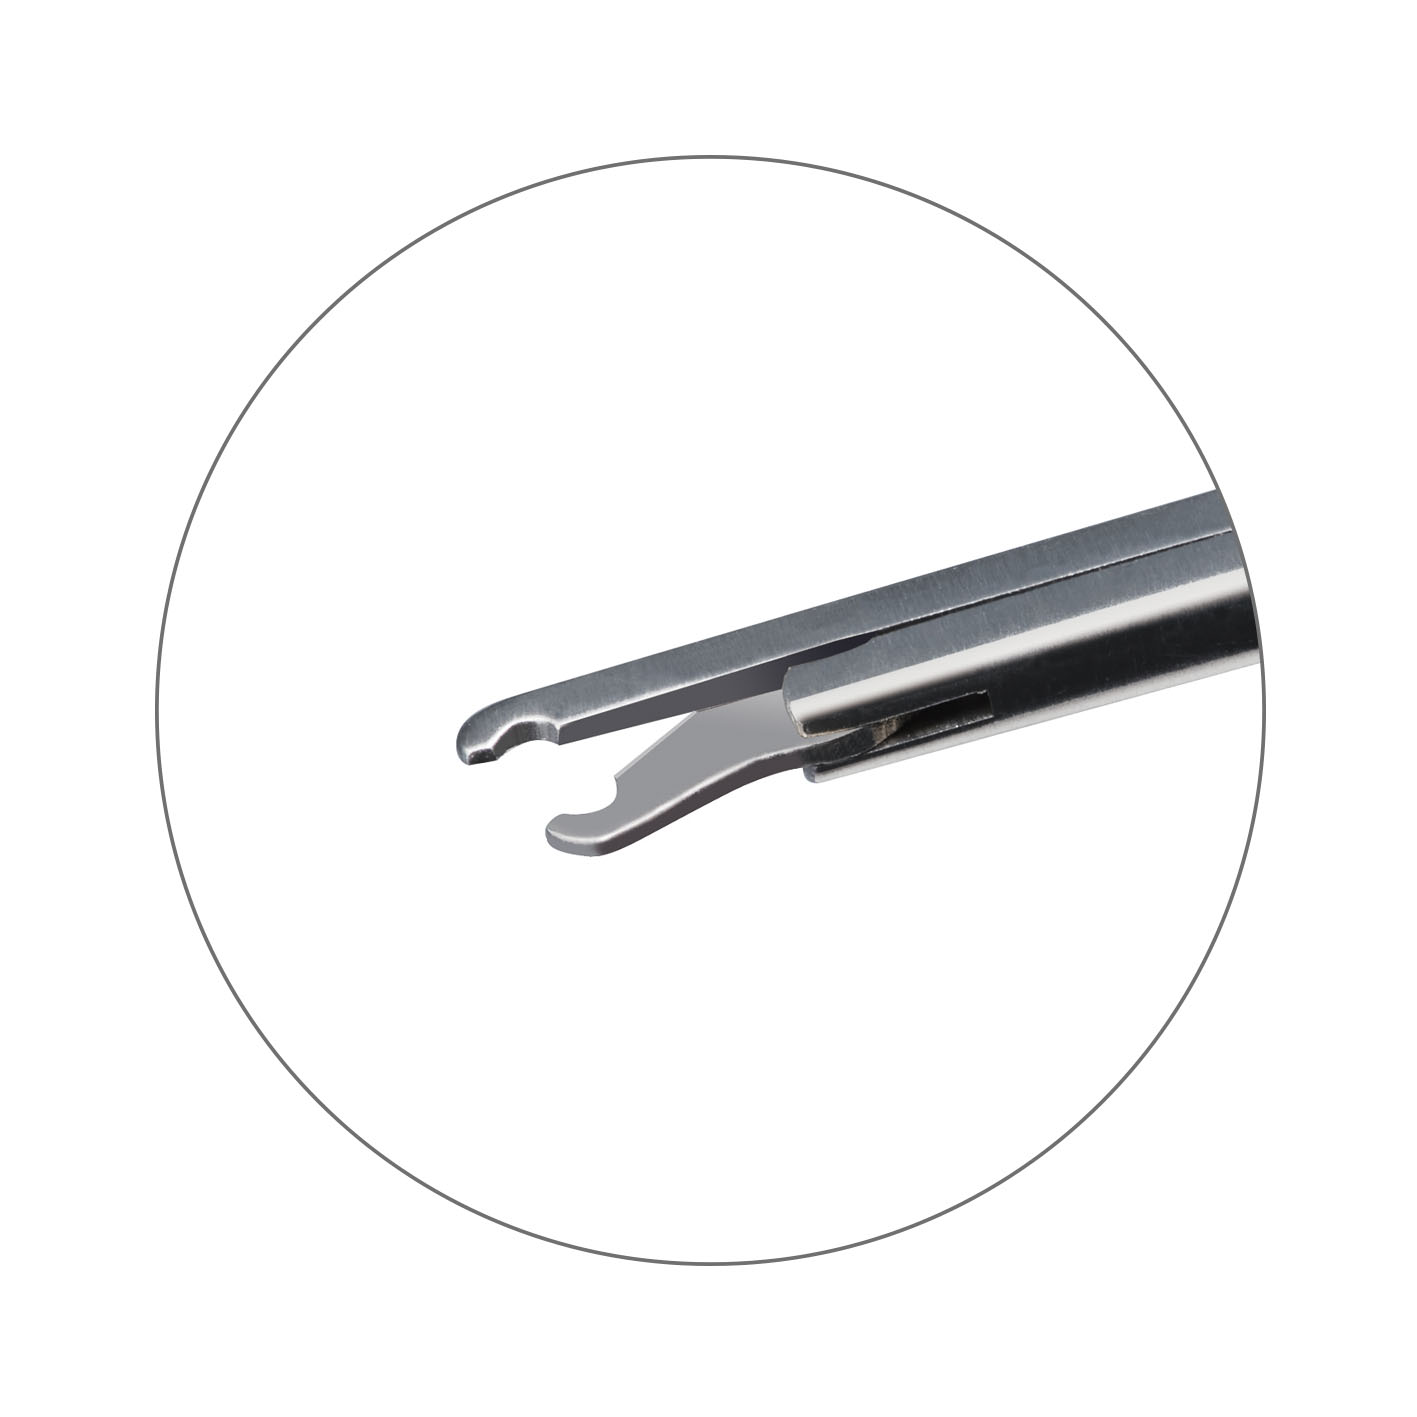 EN-3006L Stainless Steel Crurotomy Scissors 